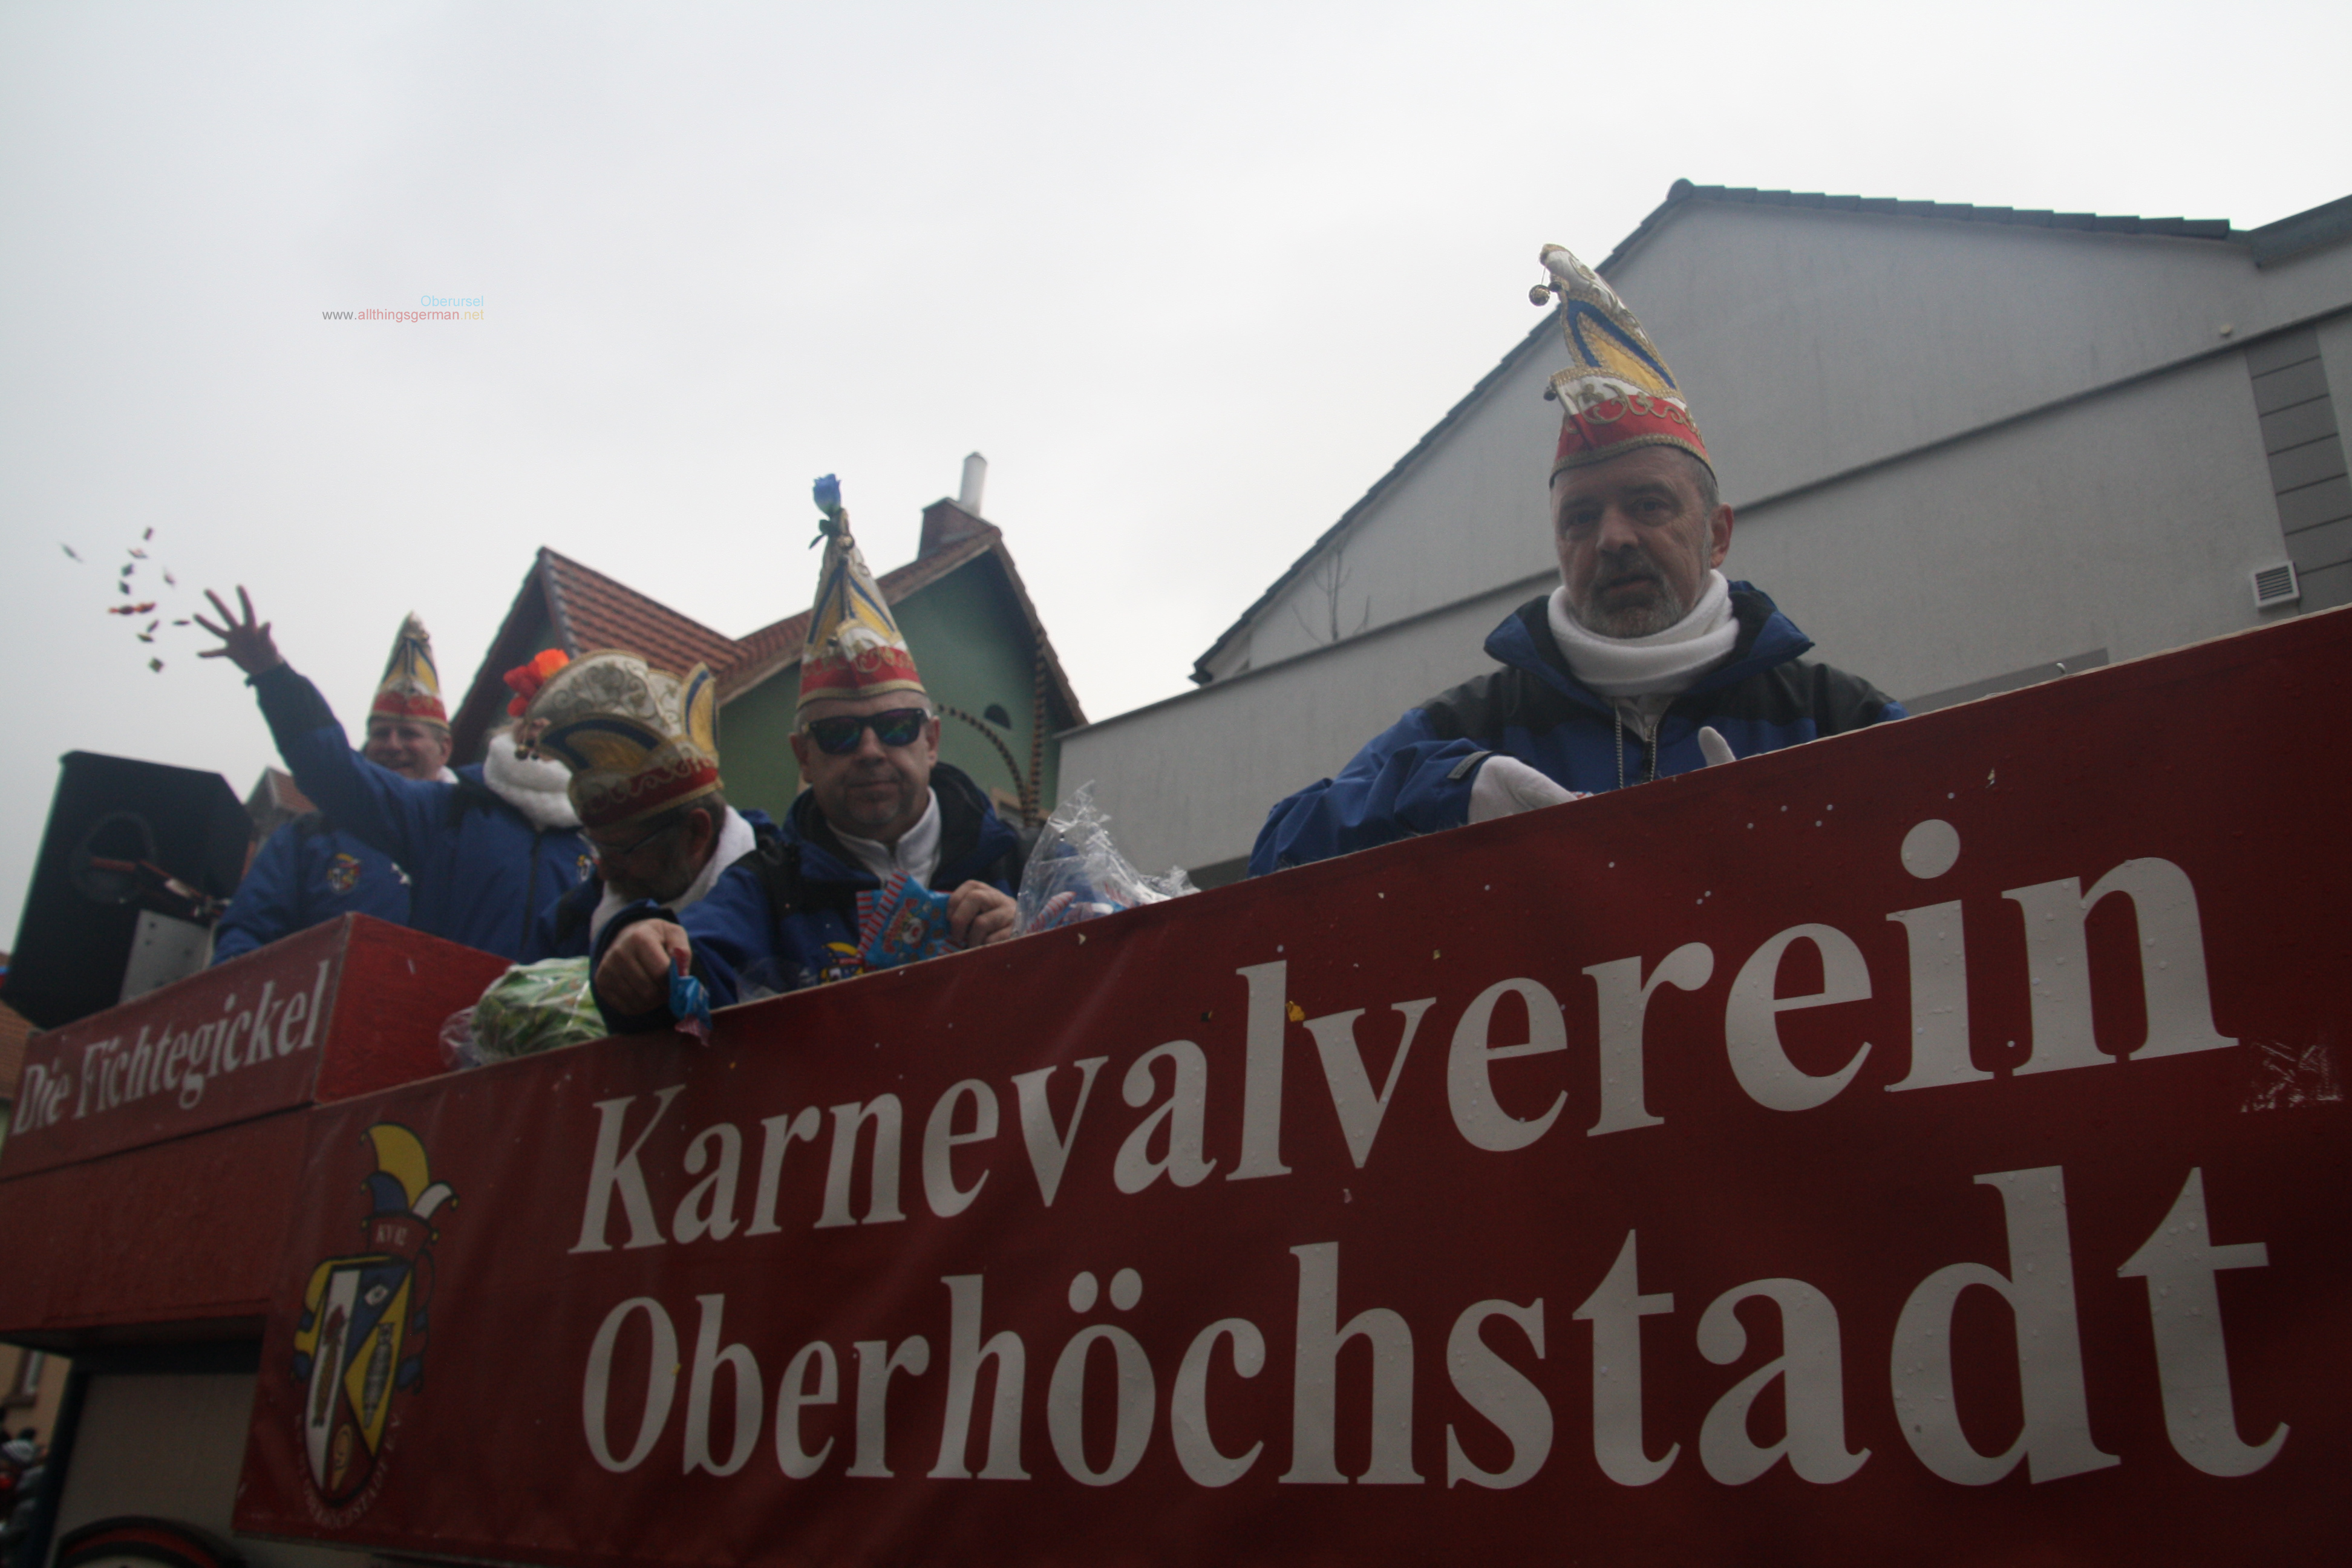 KV 02 Oberhöchstadt - Taunus-Karnevalszug 2019